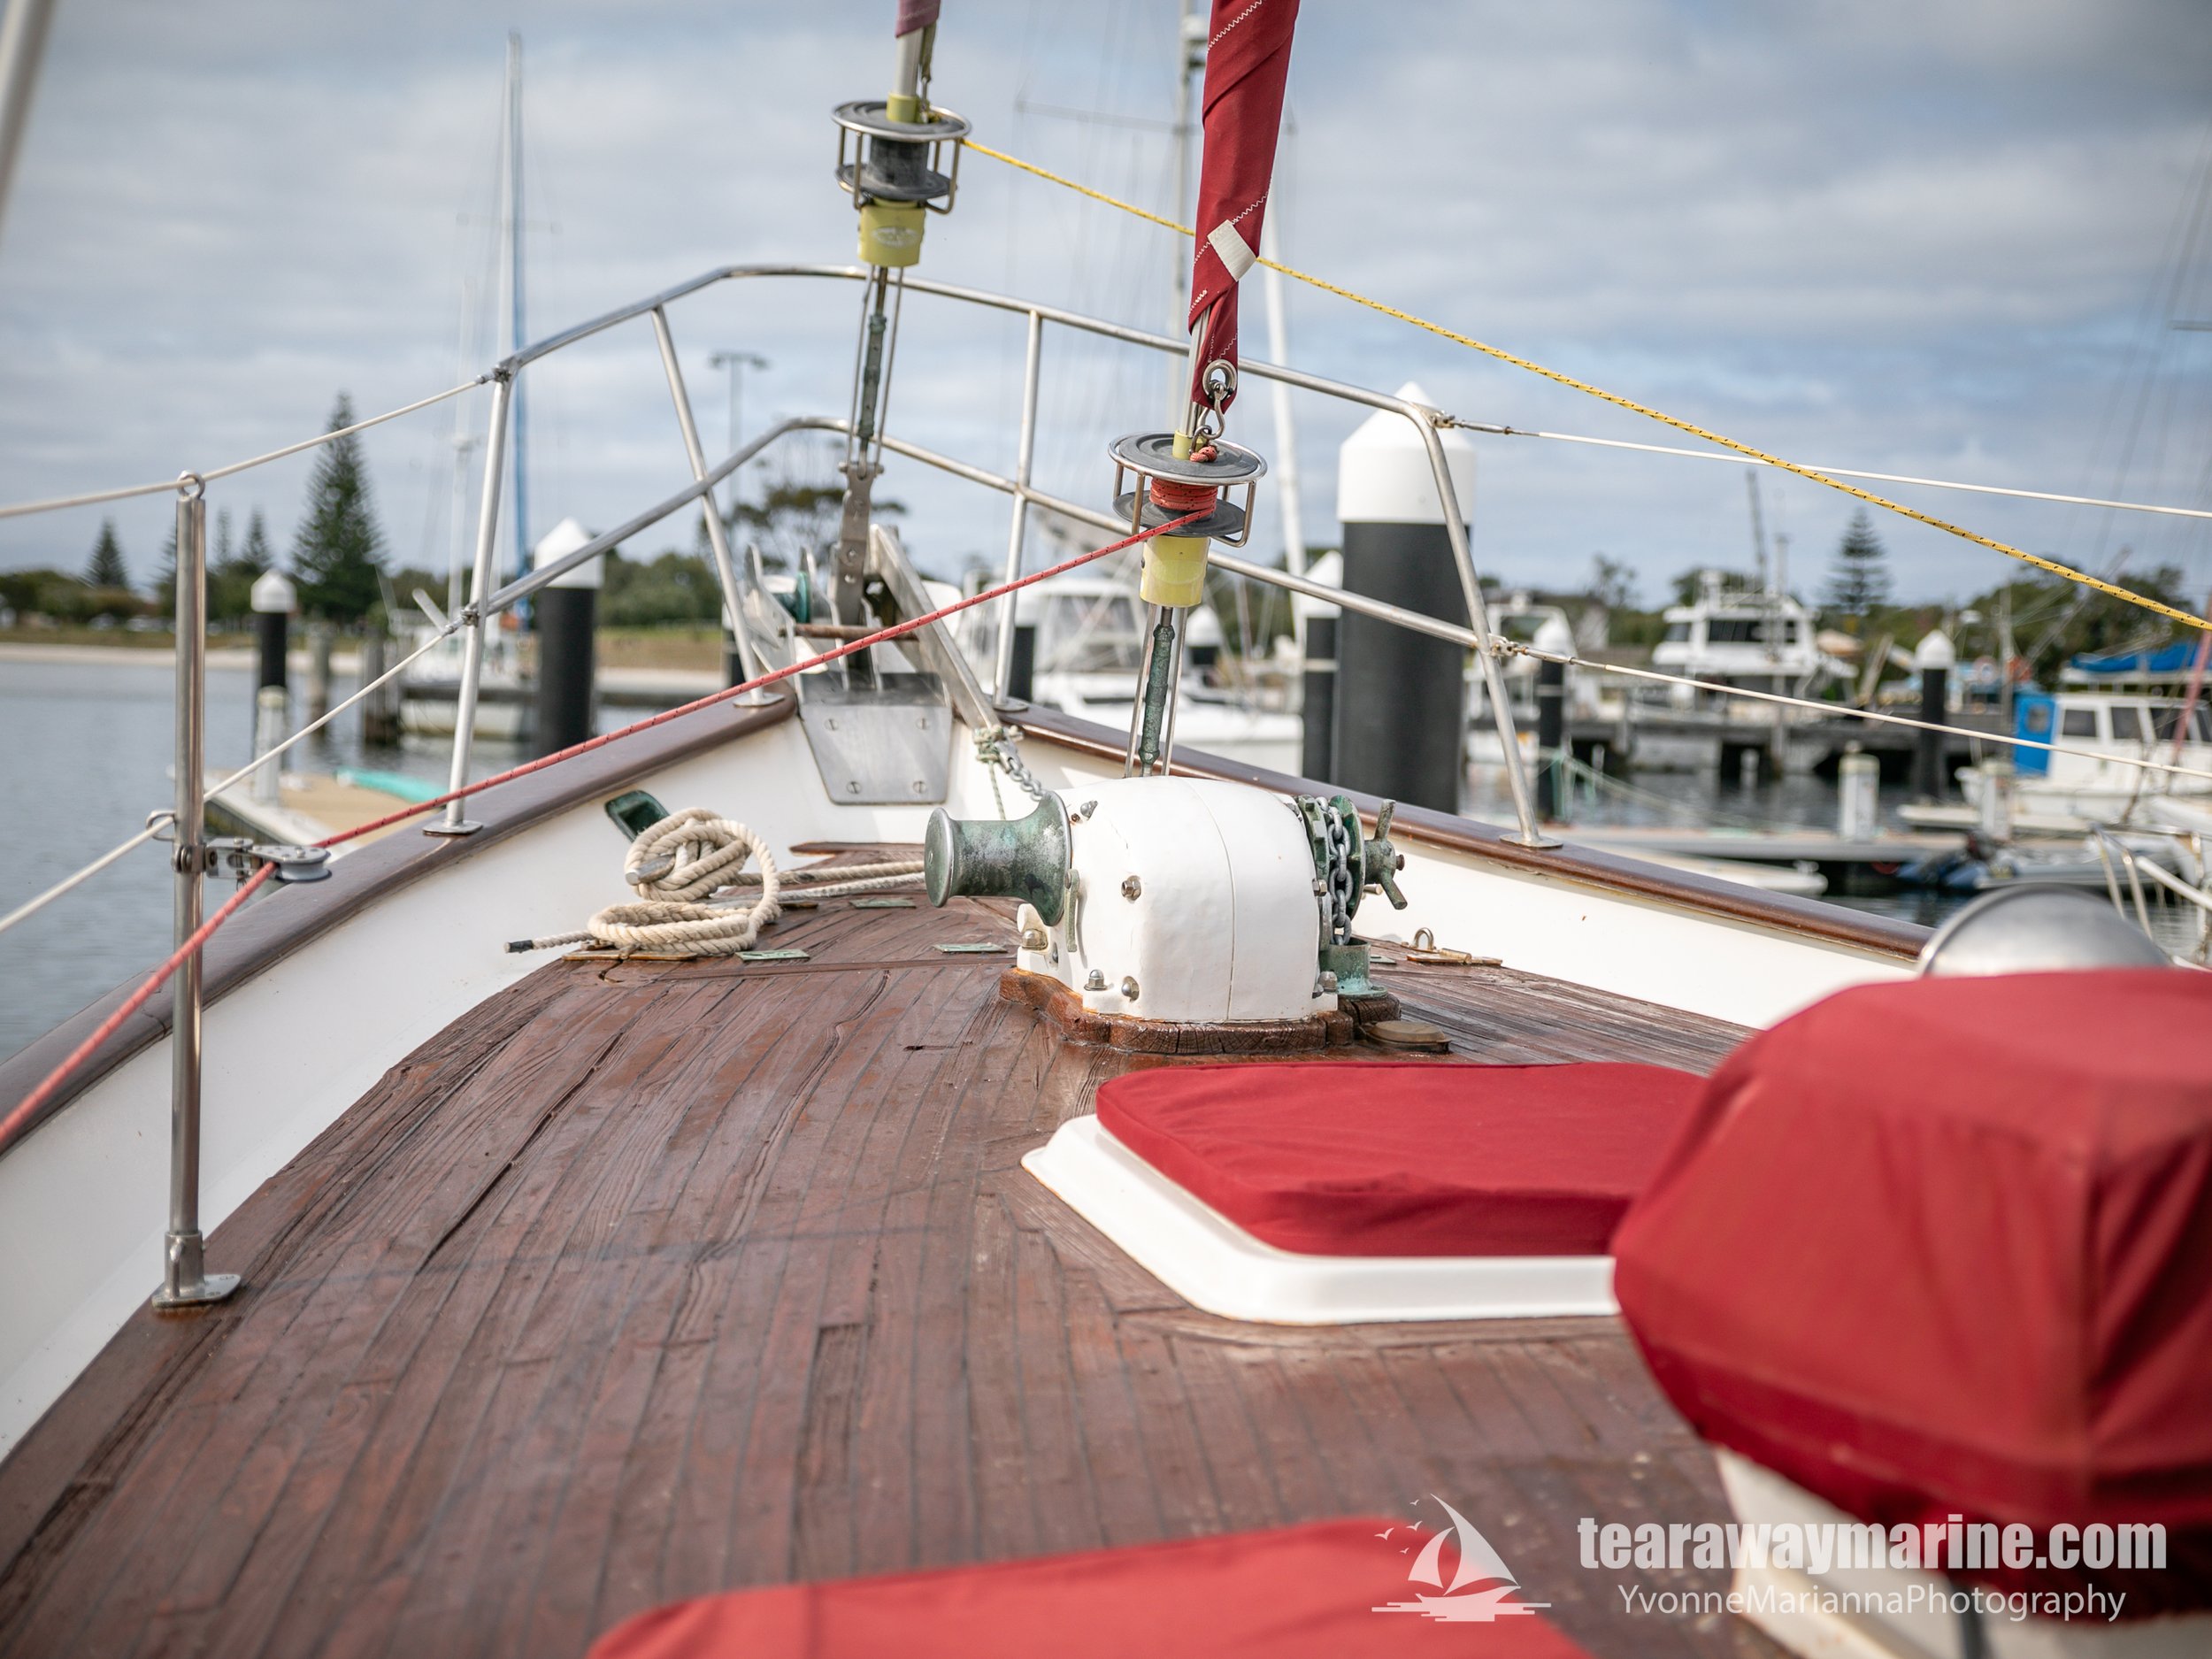 Calypso Yacht Tearaway Marine - Yvonne Marianna Photography-22.jpg